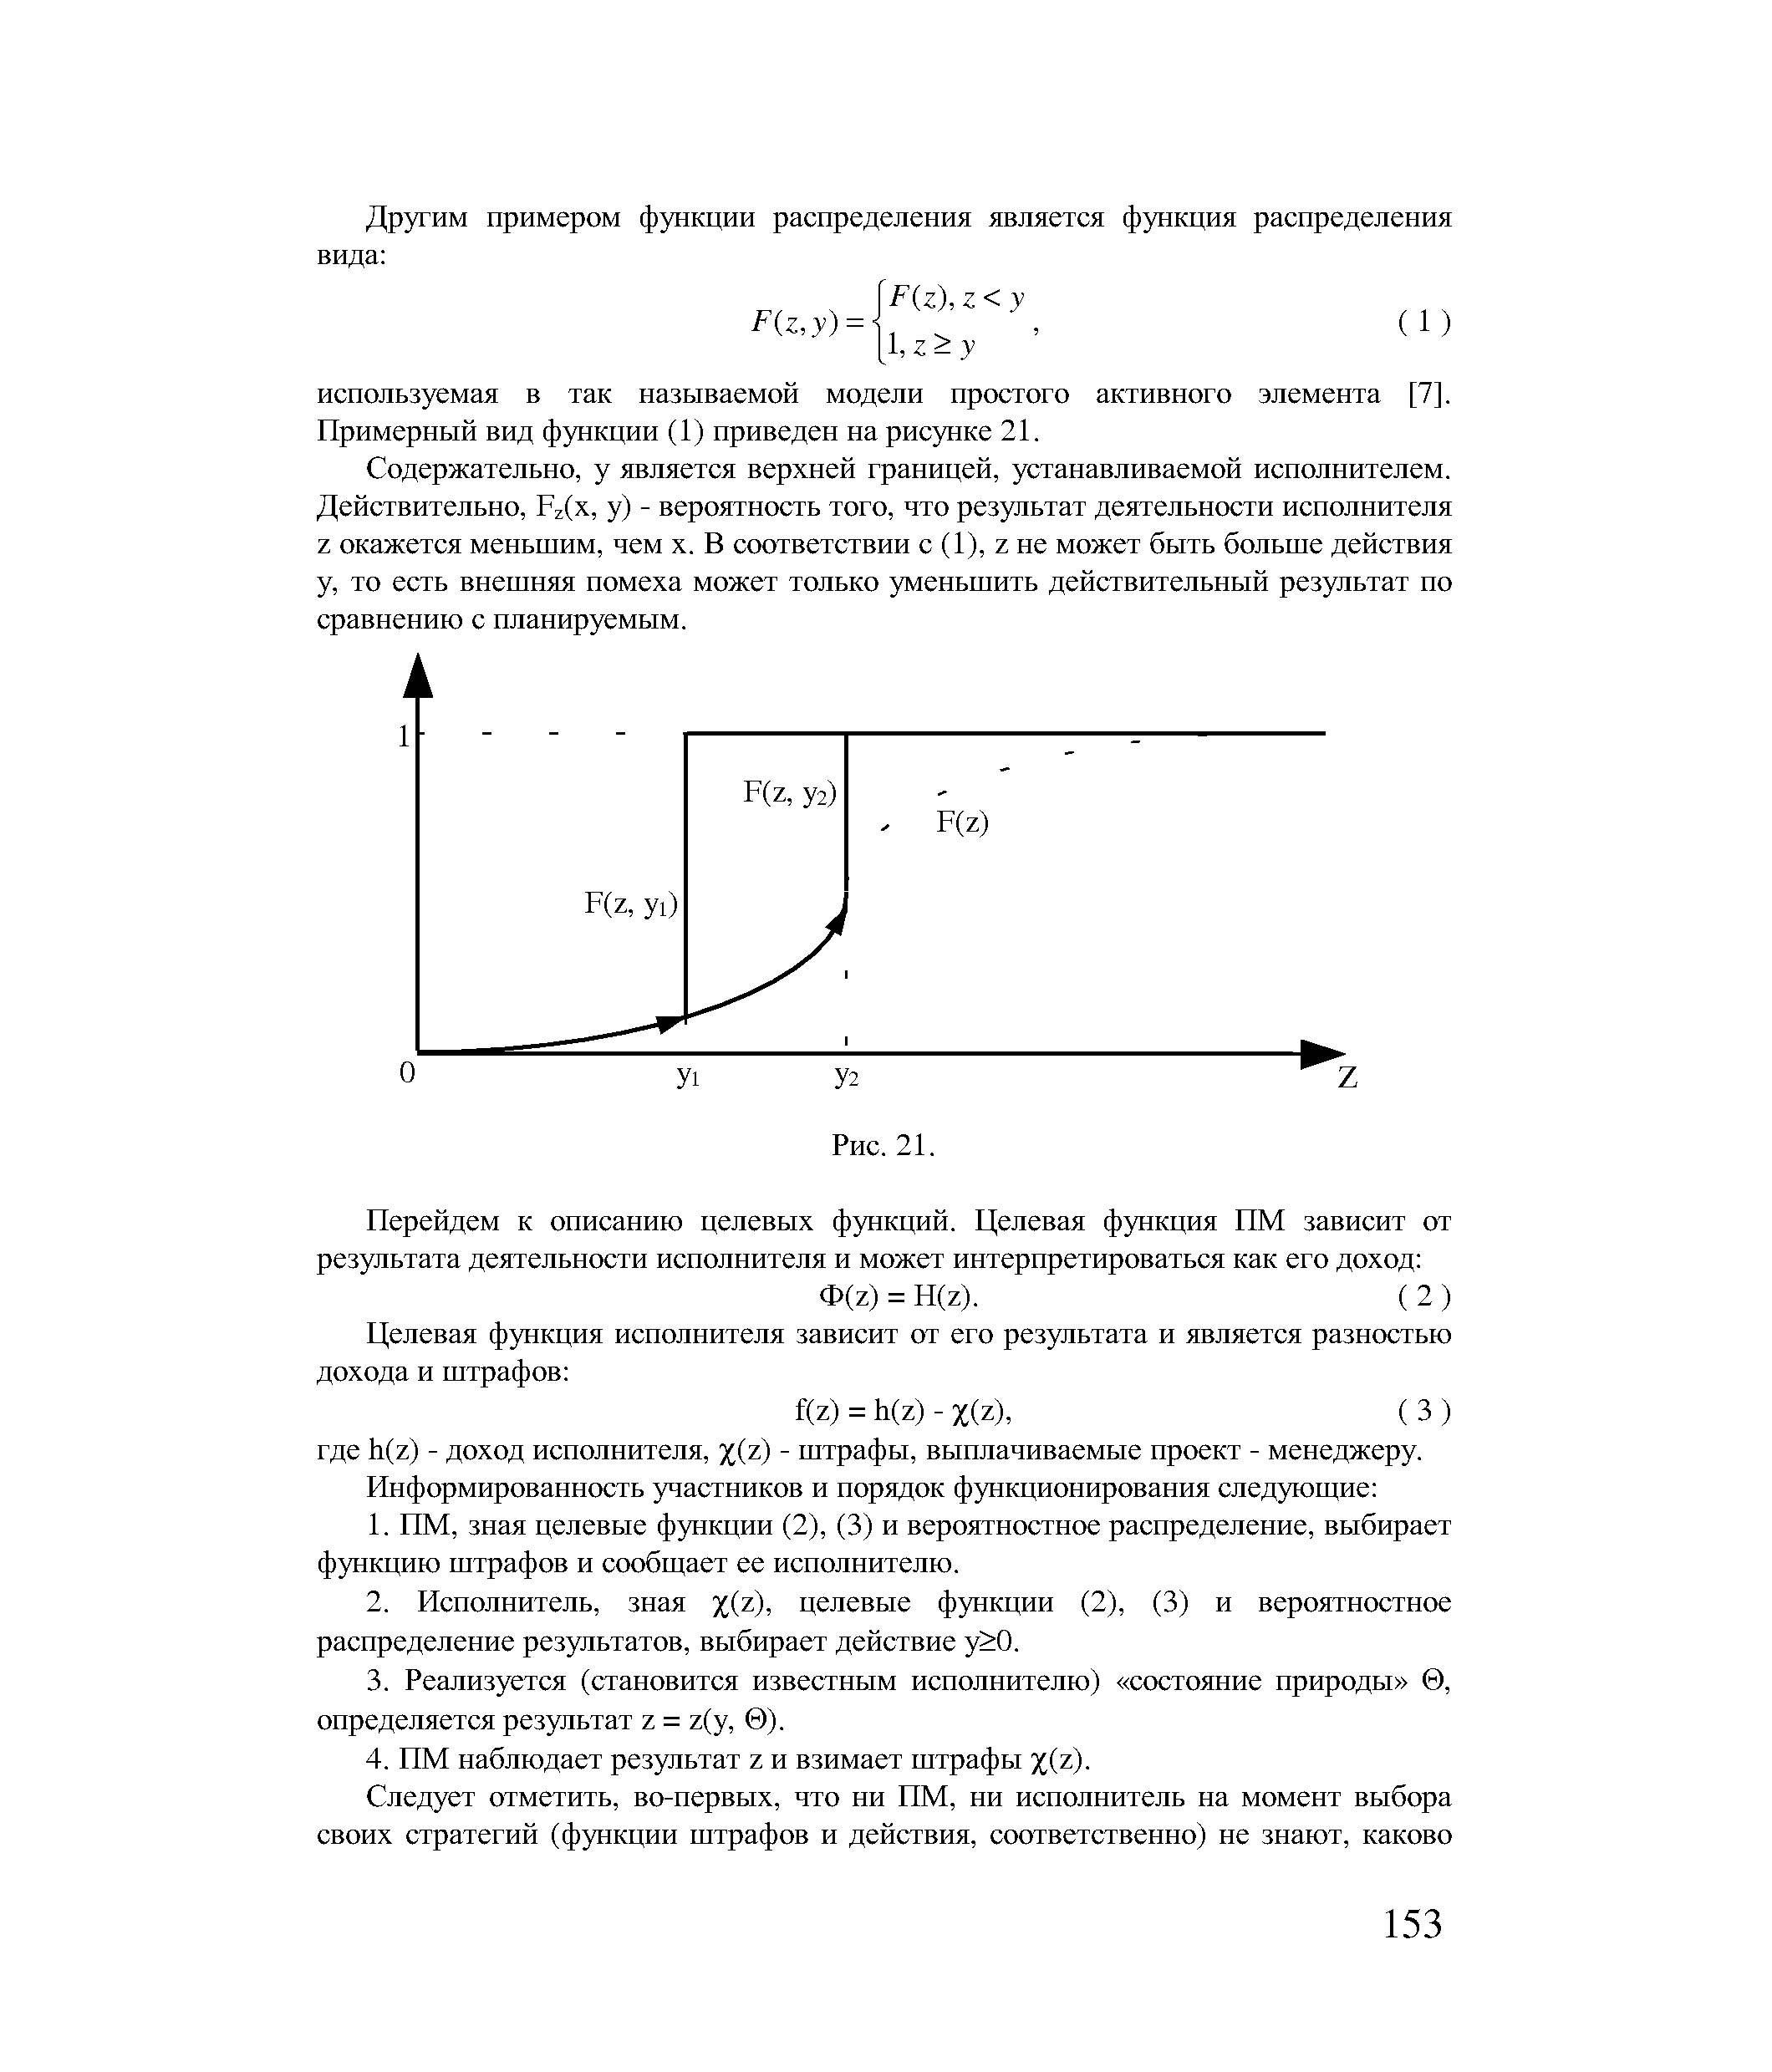 Примерный вид функции (1) приведен на рисунке 21.
